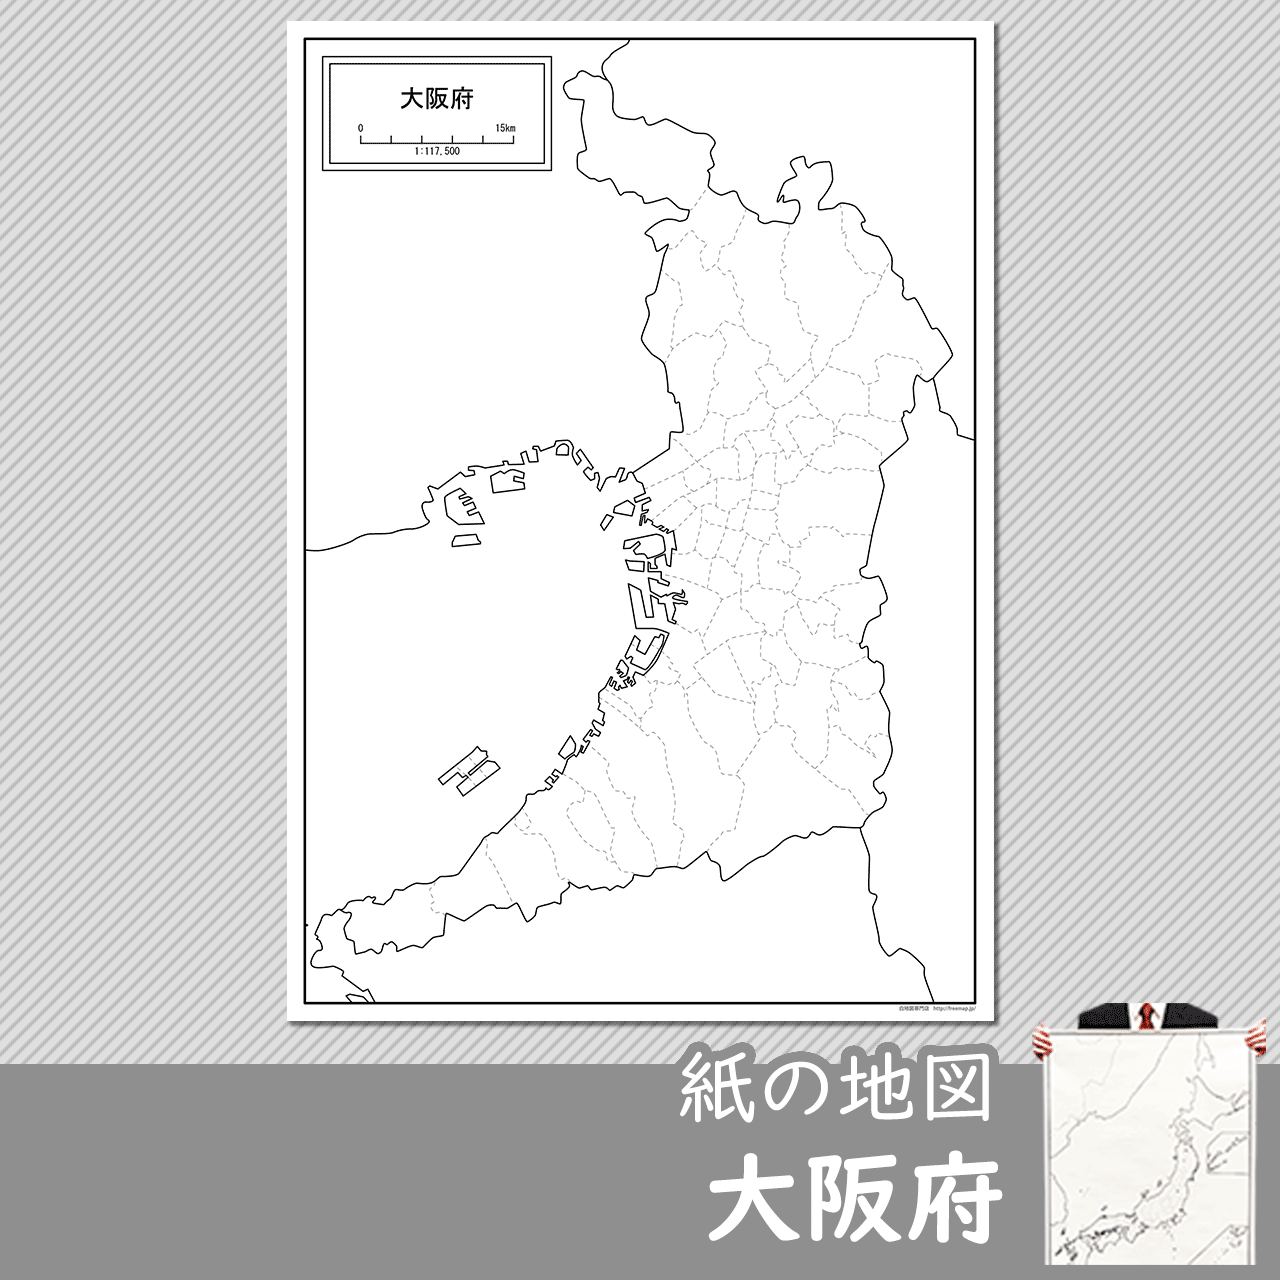 大阪府の紙の白地図のサムネイル